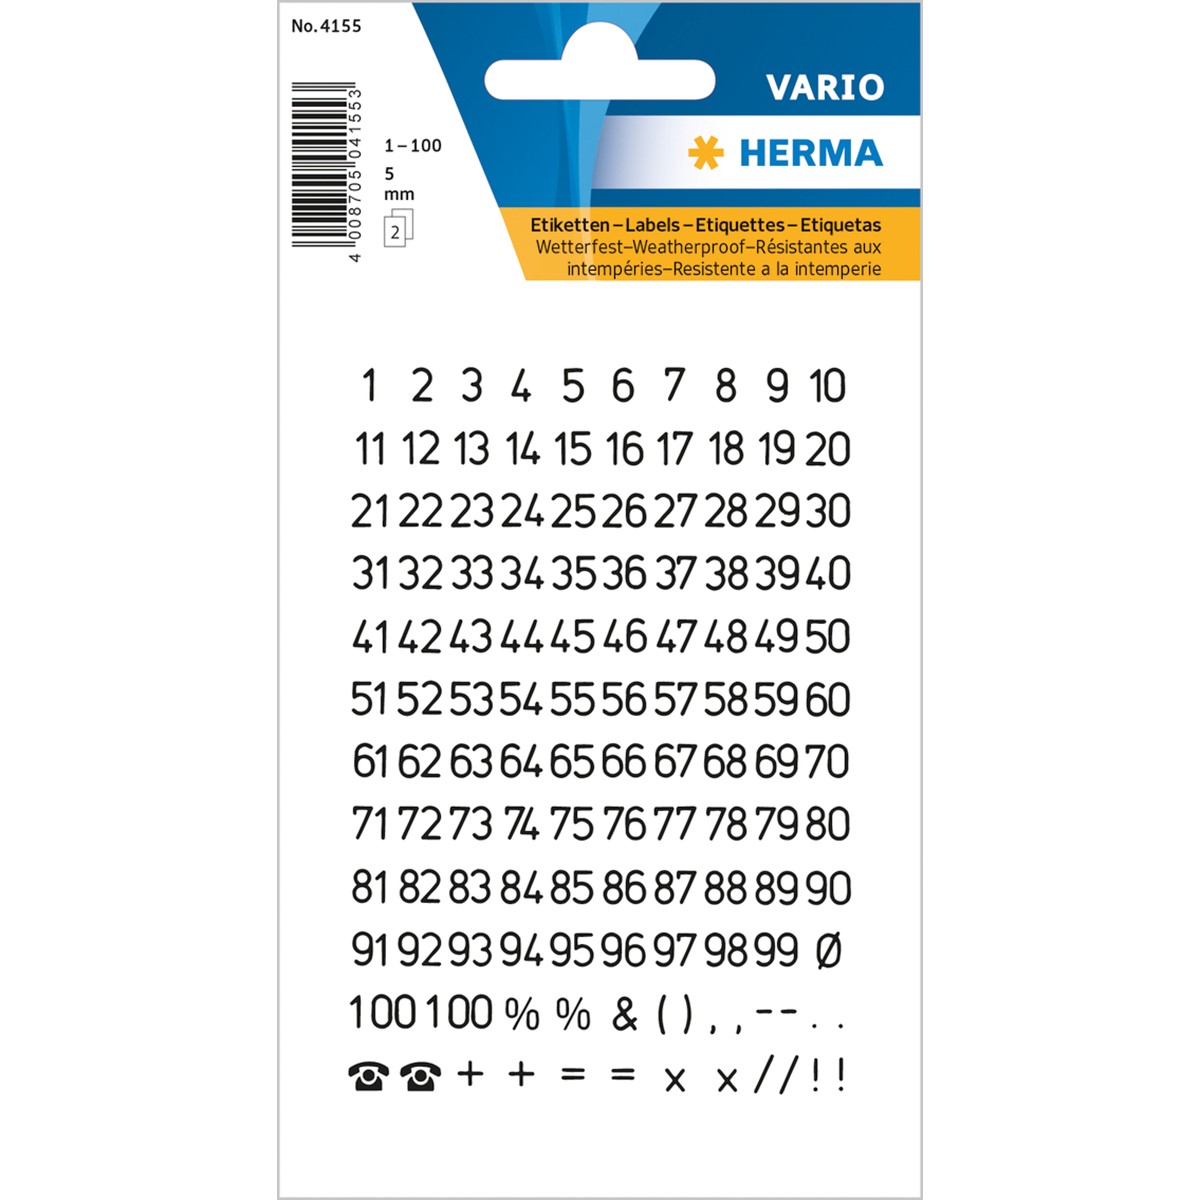 HERMA 4155 - Zahlen Etiketten, schwarz/transparent, 5 mm, 2 Blatt